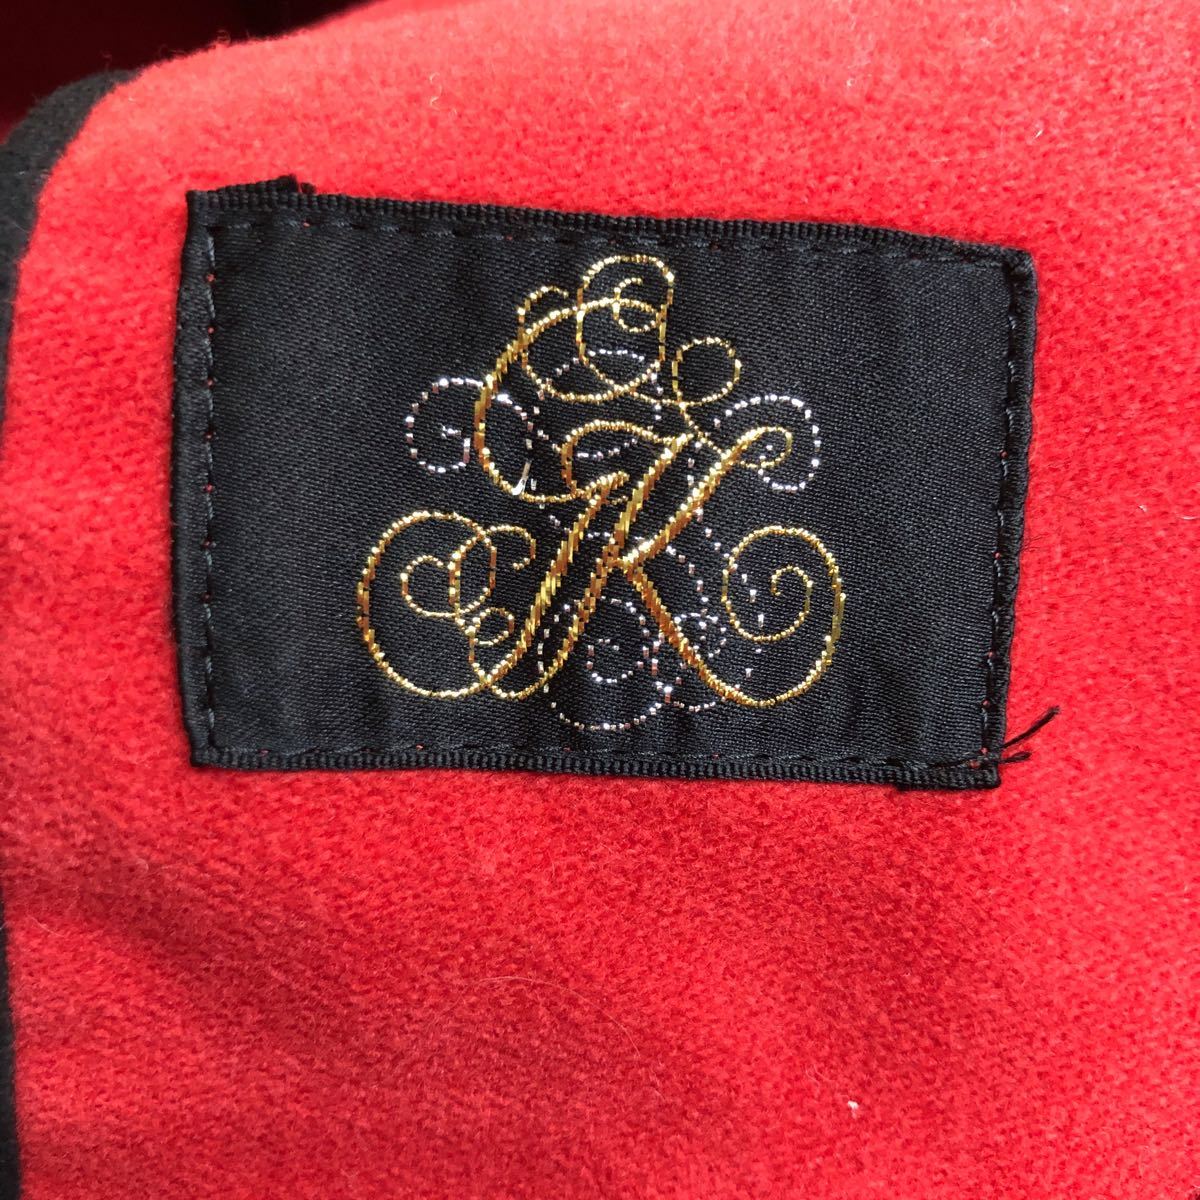 NB176 日本製 伊太利屋 イタリヤ テーラードジャケット デザイン ジャケット アウター 上着 羽織り 長袖 レッド 赤 レディース 9_画像6